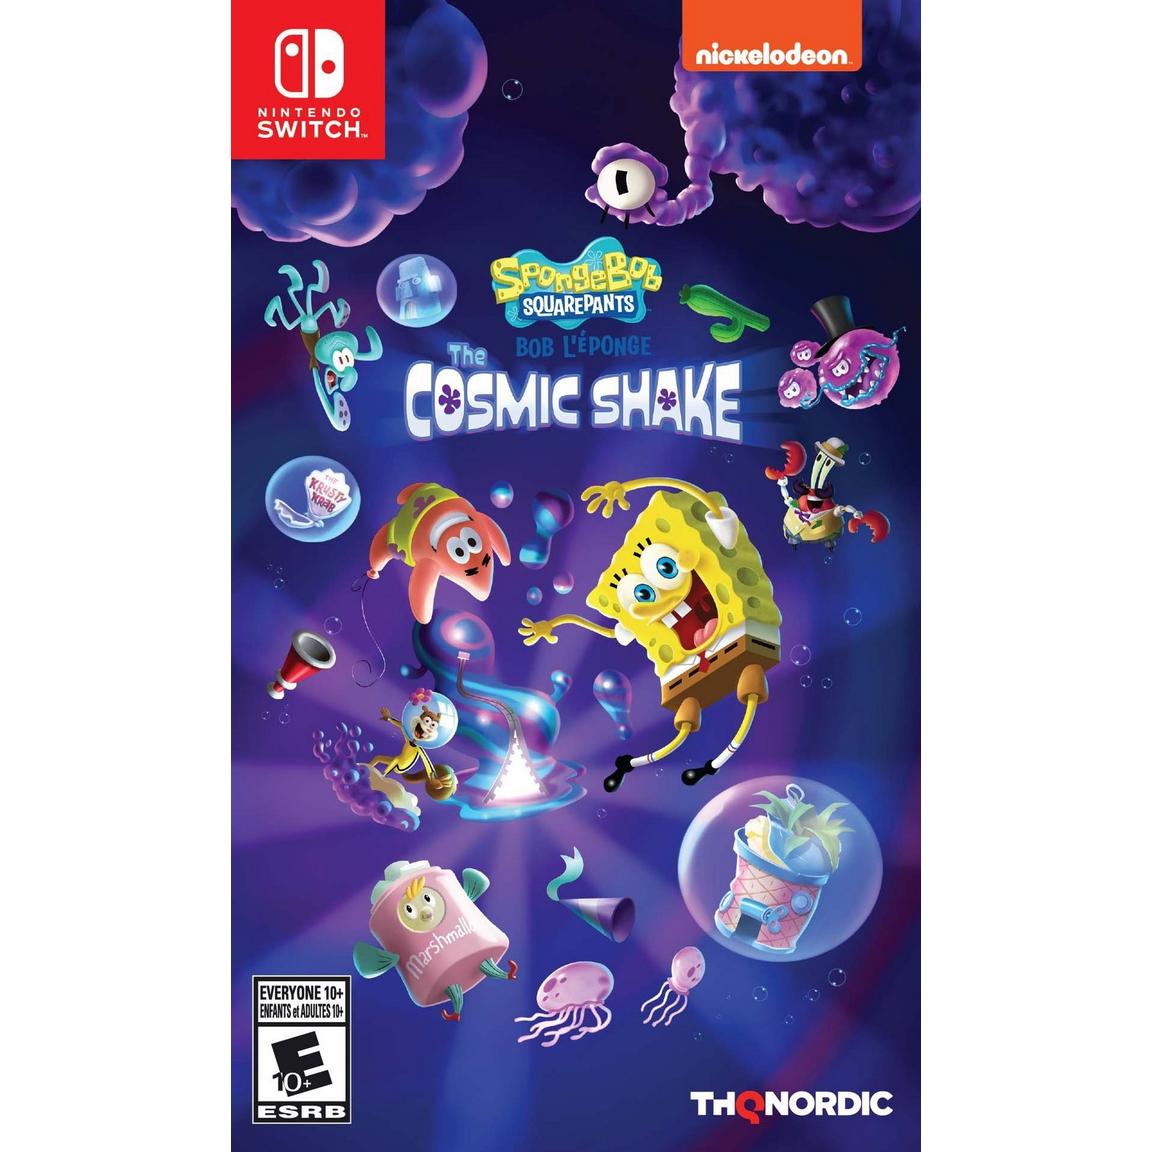 Видеоигра SpongeBob SquarePants: The Cosmic Shake - Nintendo Switch xbox игра thq nordic spongebob squarepants the cosmic shake